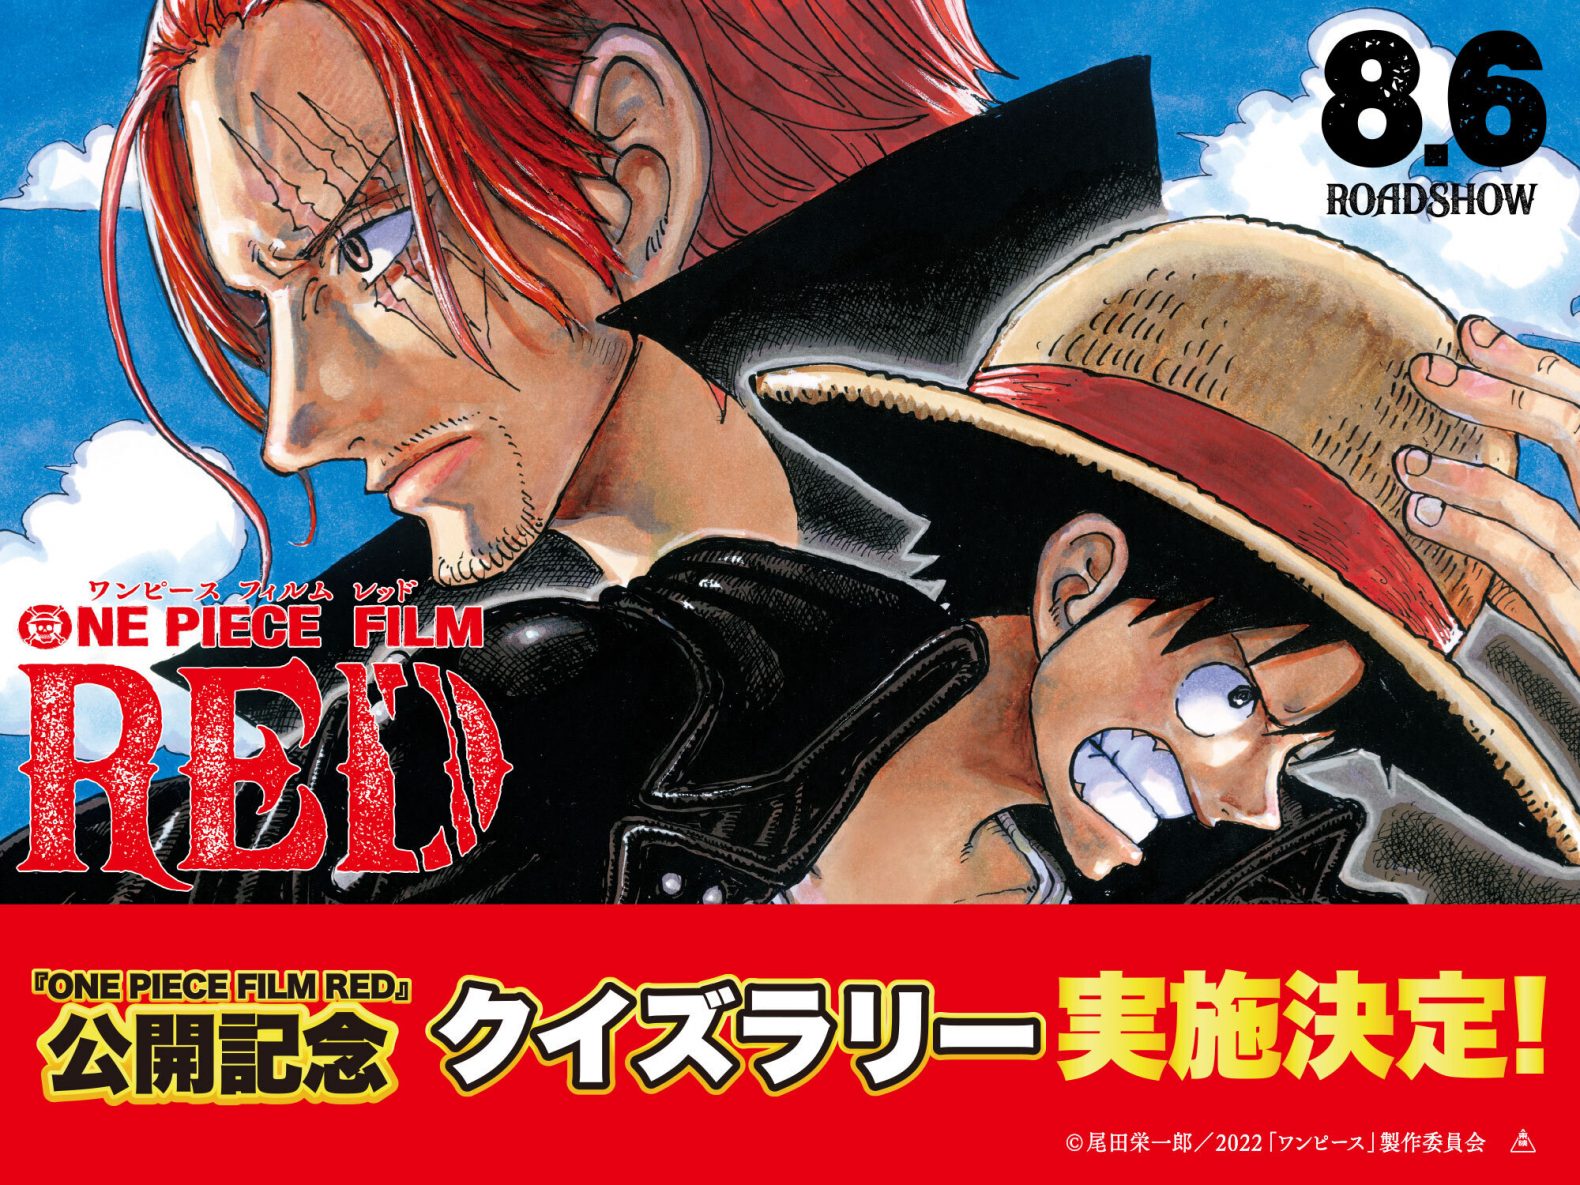 映画公開記念 クイズラリー開催決定 One Piece Film Red 公式サイト